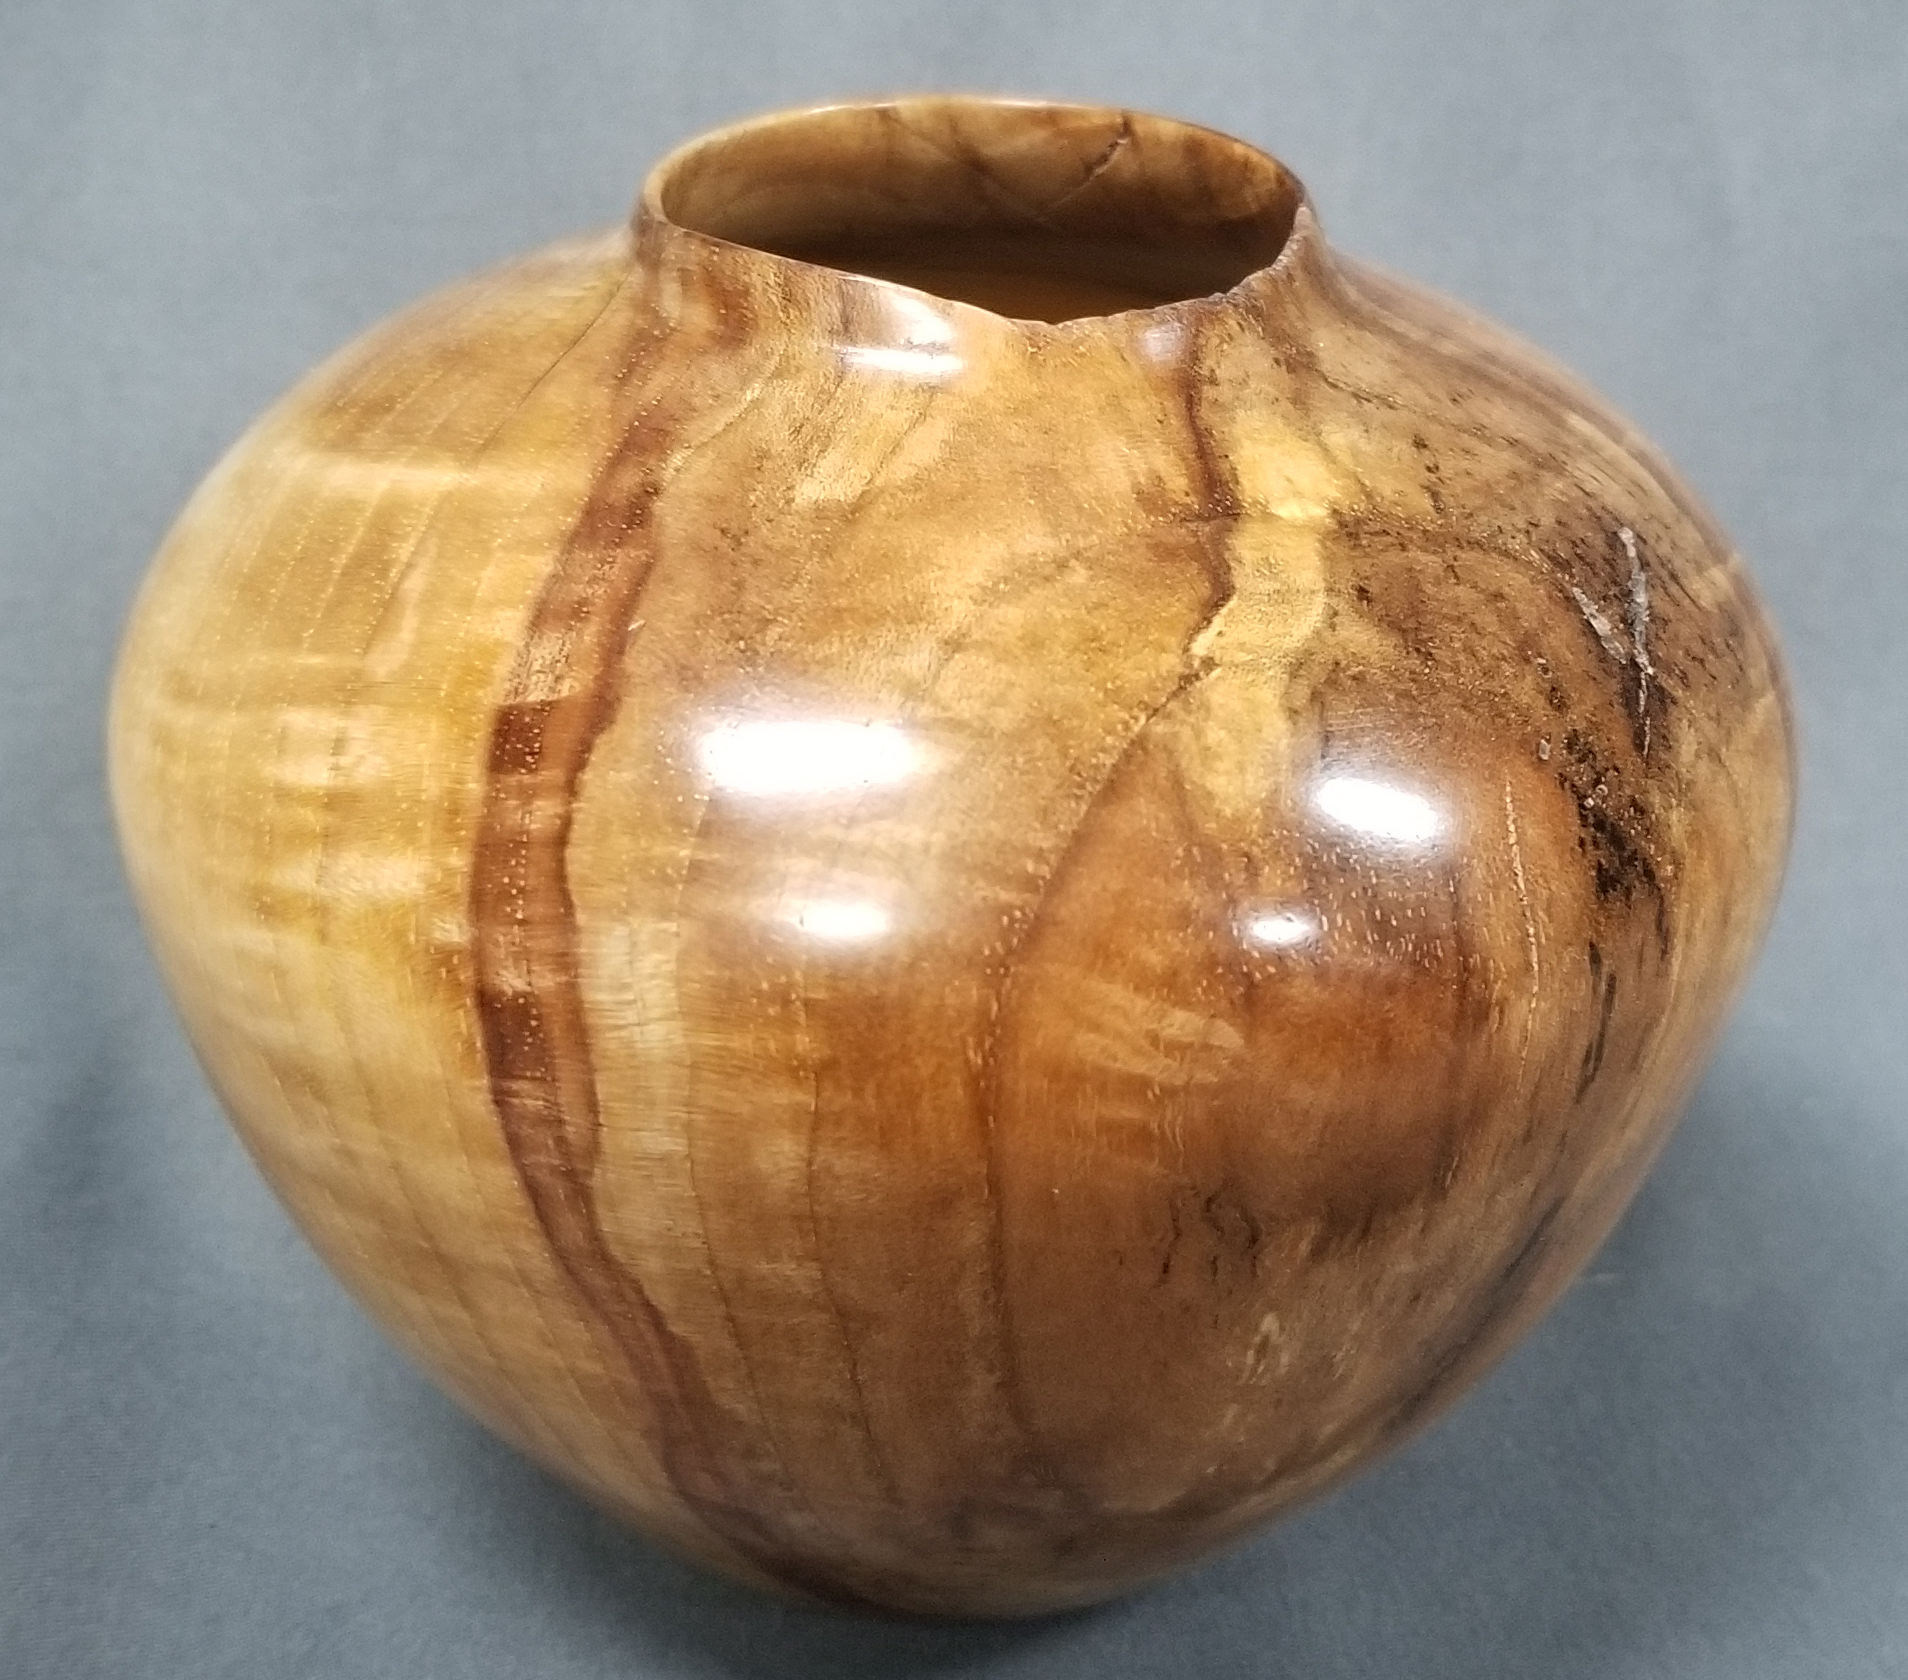 Hickory Burl Hollow Form